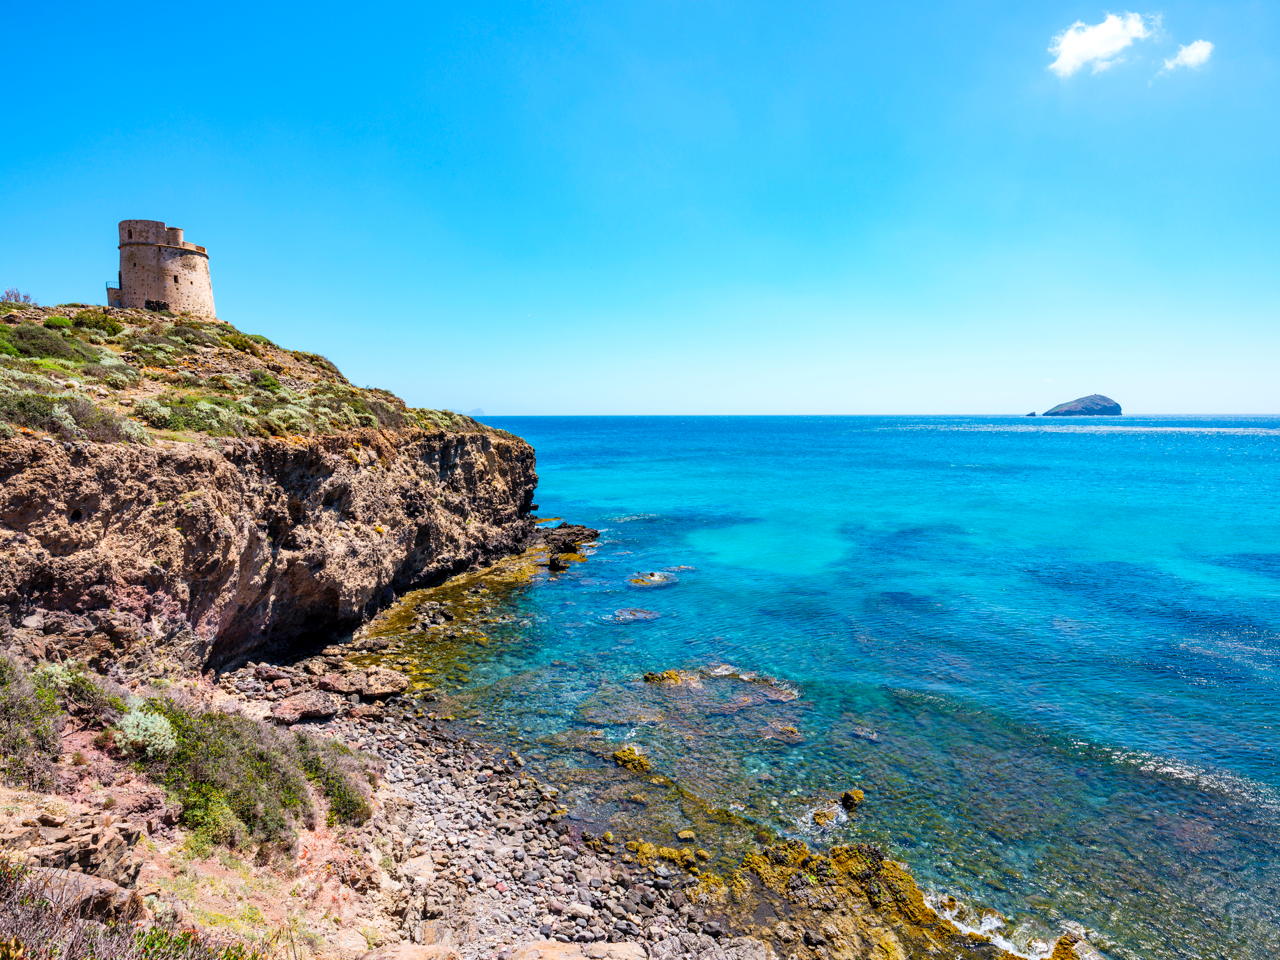 Scogliera con Torre Cannai nella penisola di Sant'Antioco in Sardegna © iStock